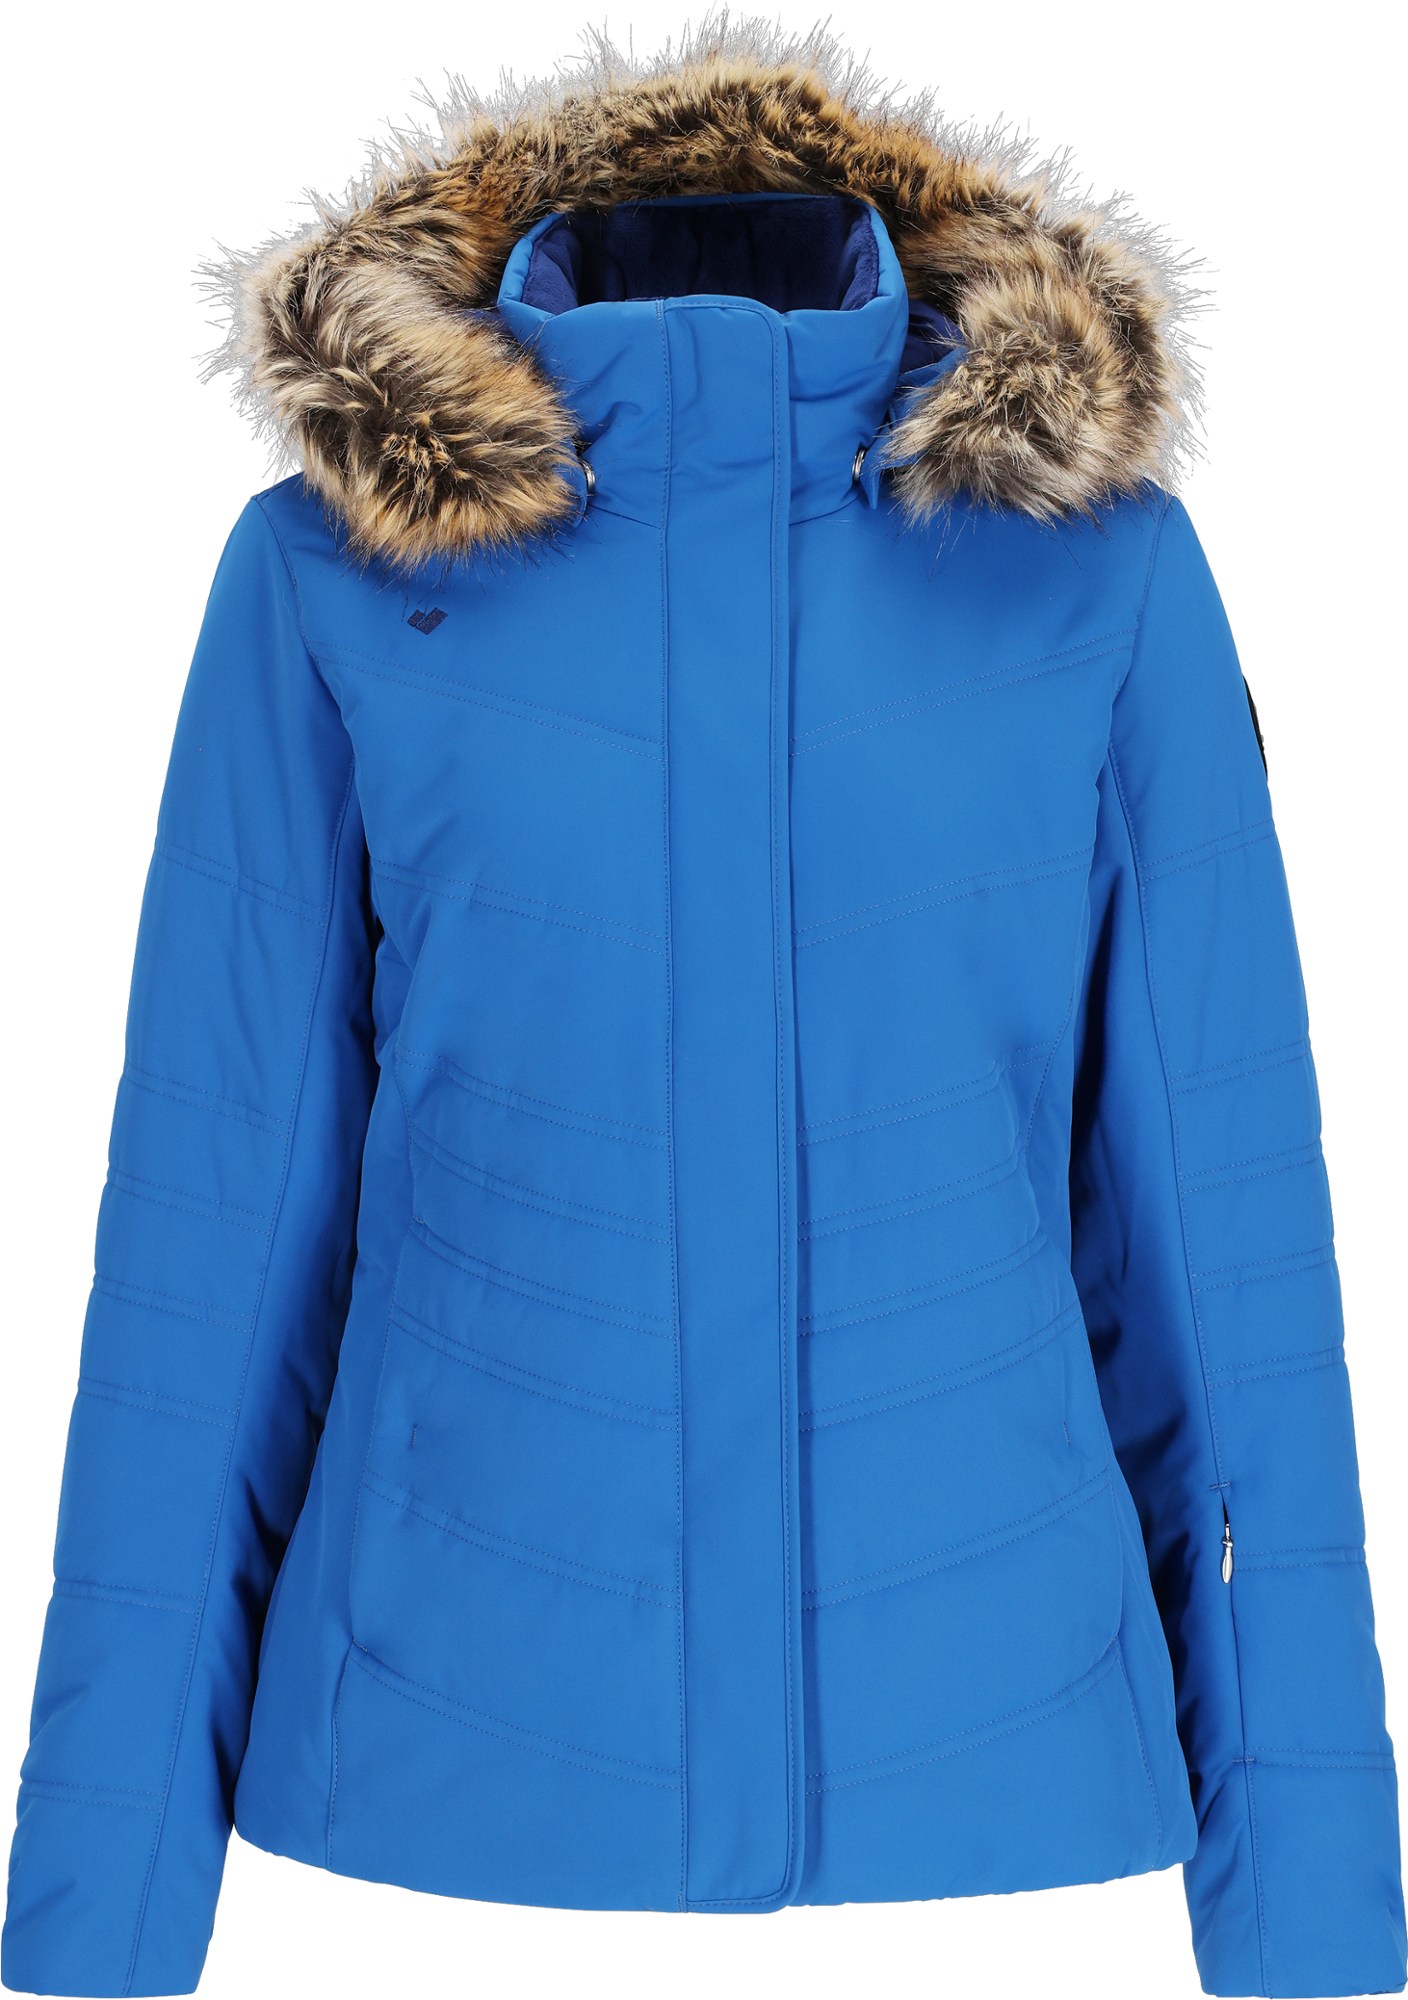 Утепленная куртка Tuscany II — женская Obermeyer, синий